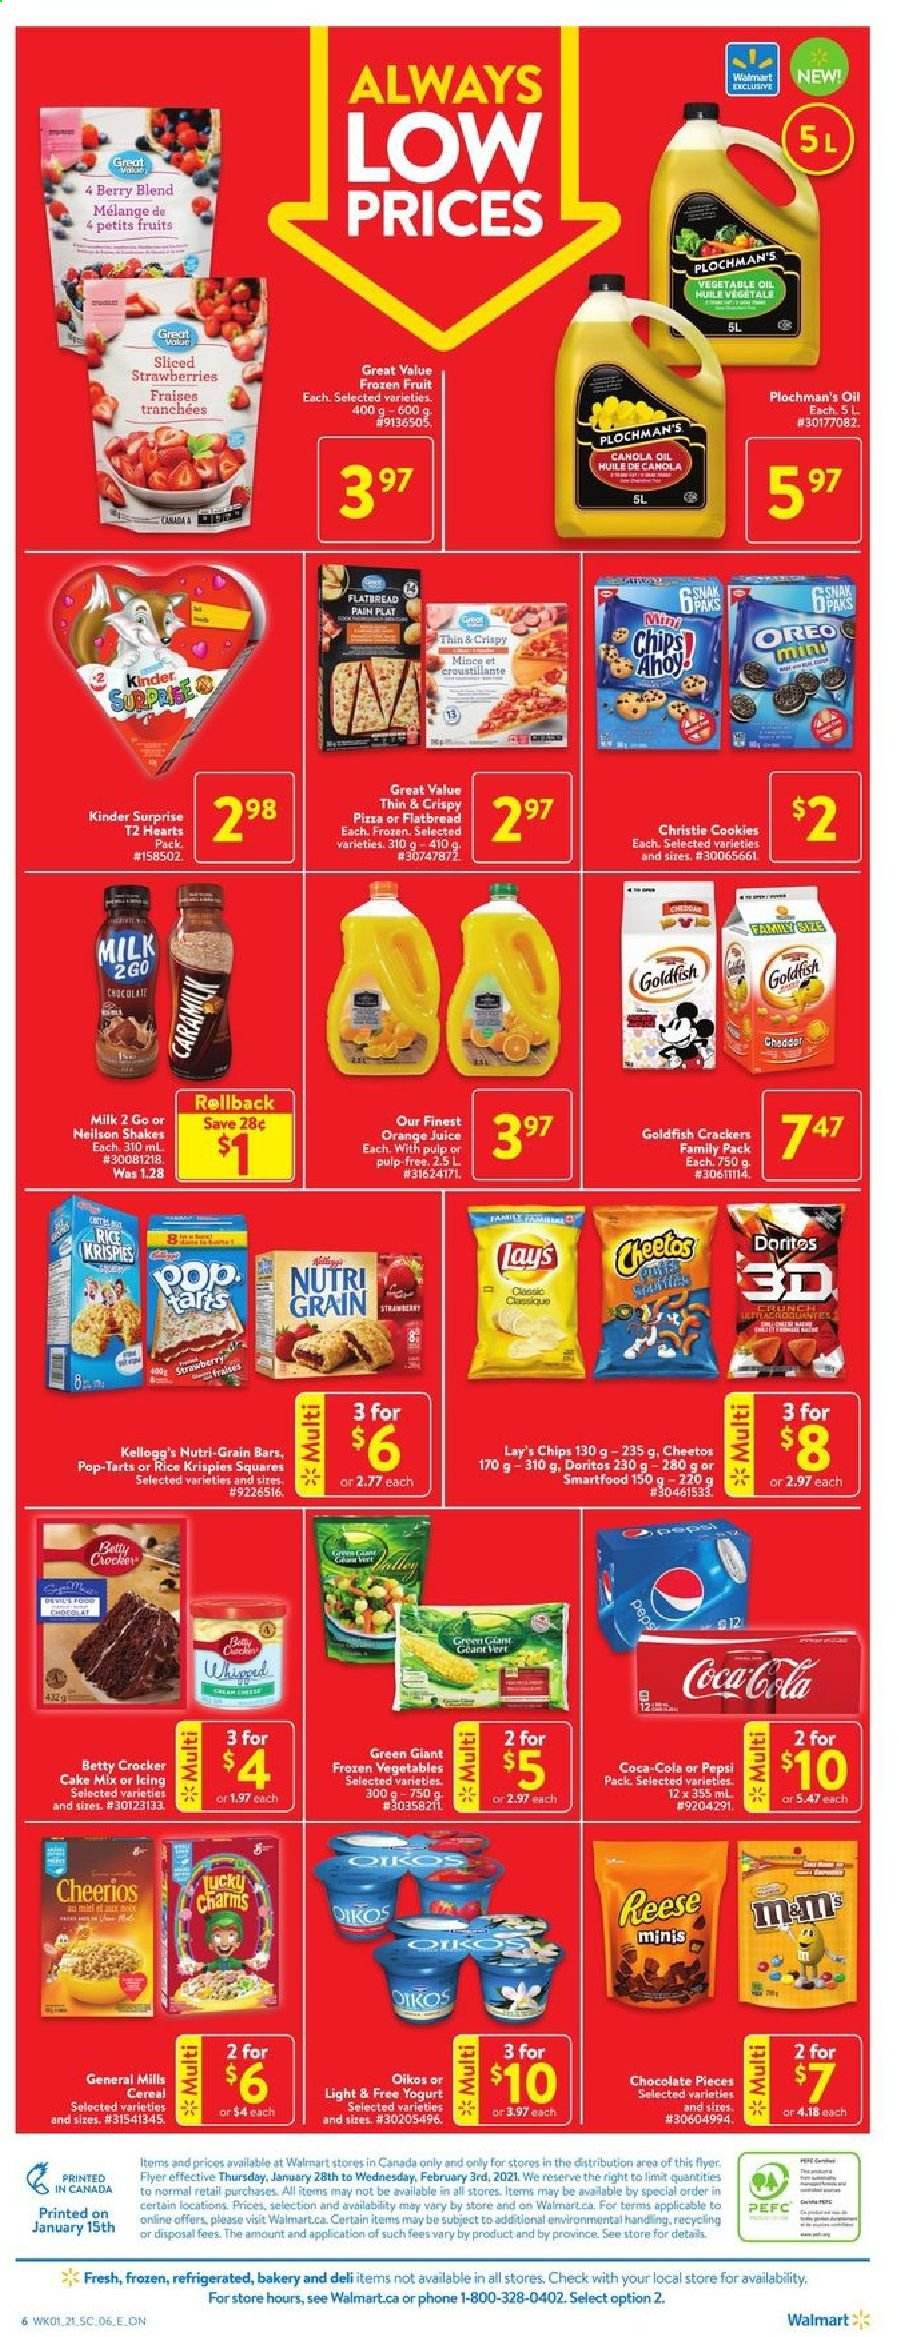 thumbnail - Circulaire Walmart - 28 Janvier 2021 - 03 Février 2021 - Produits soldés - cookies, chips, crackers, Lay’s, Pepsi, fraises, huile, Kellogg's, Always. Page 3.